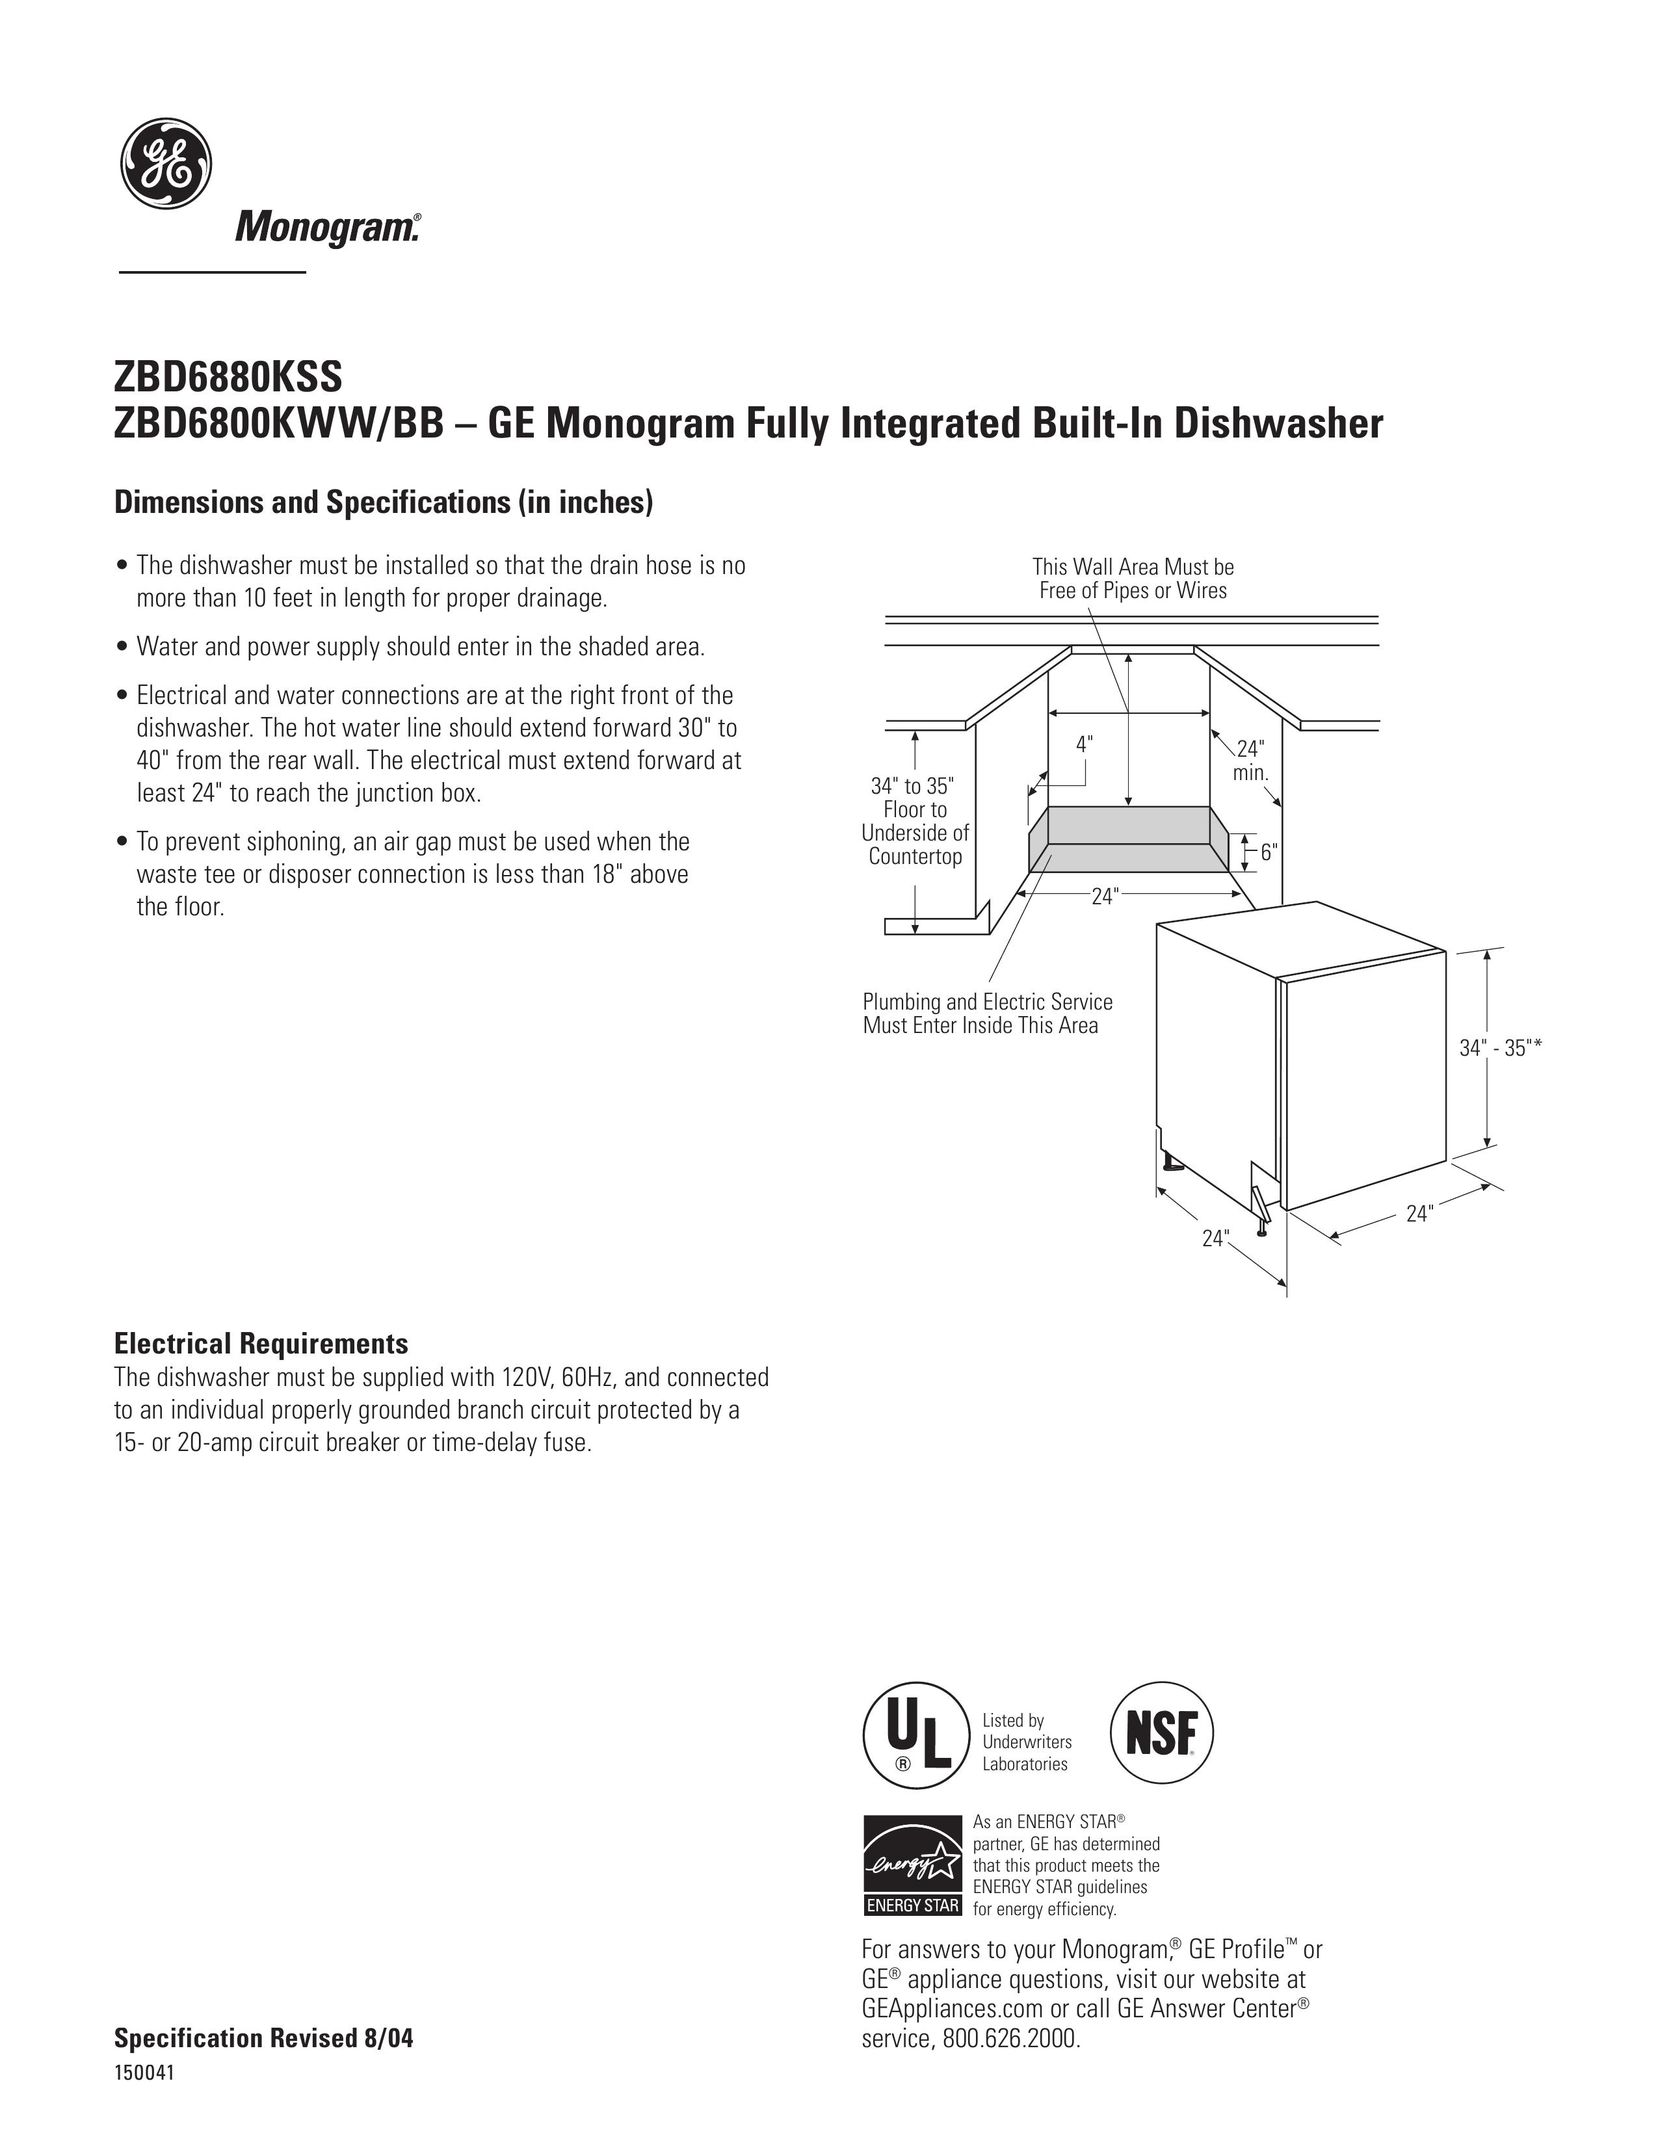 GE Monogram ZBD6800KBB Dishwasher User Manual